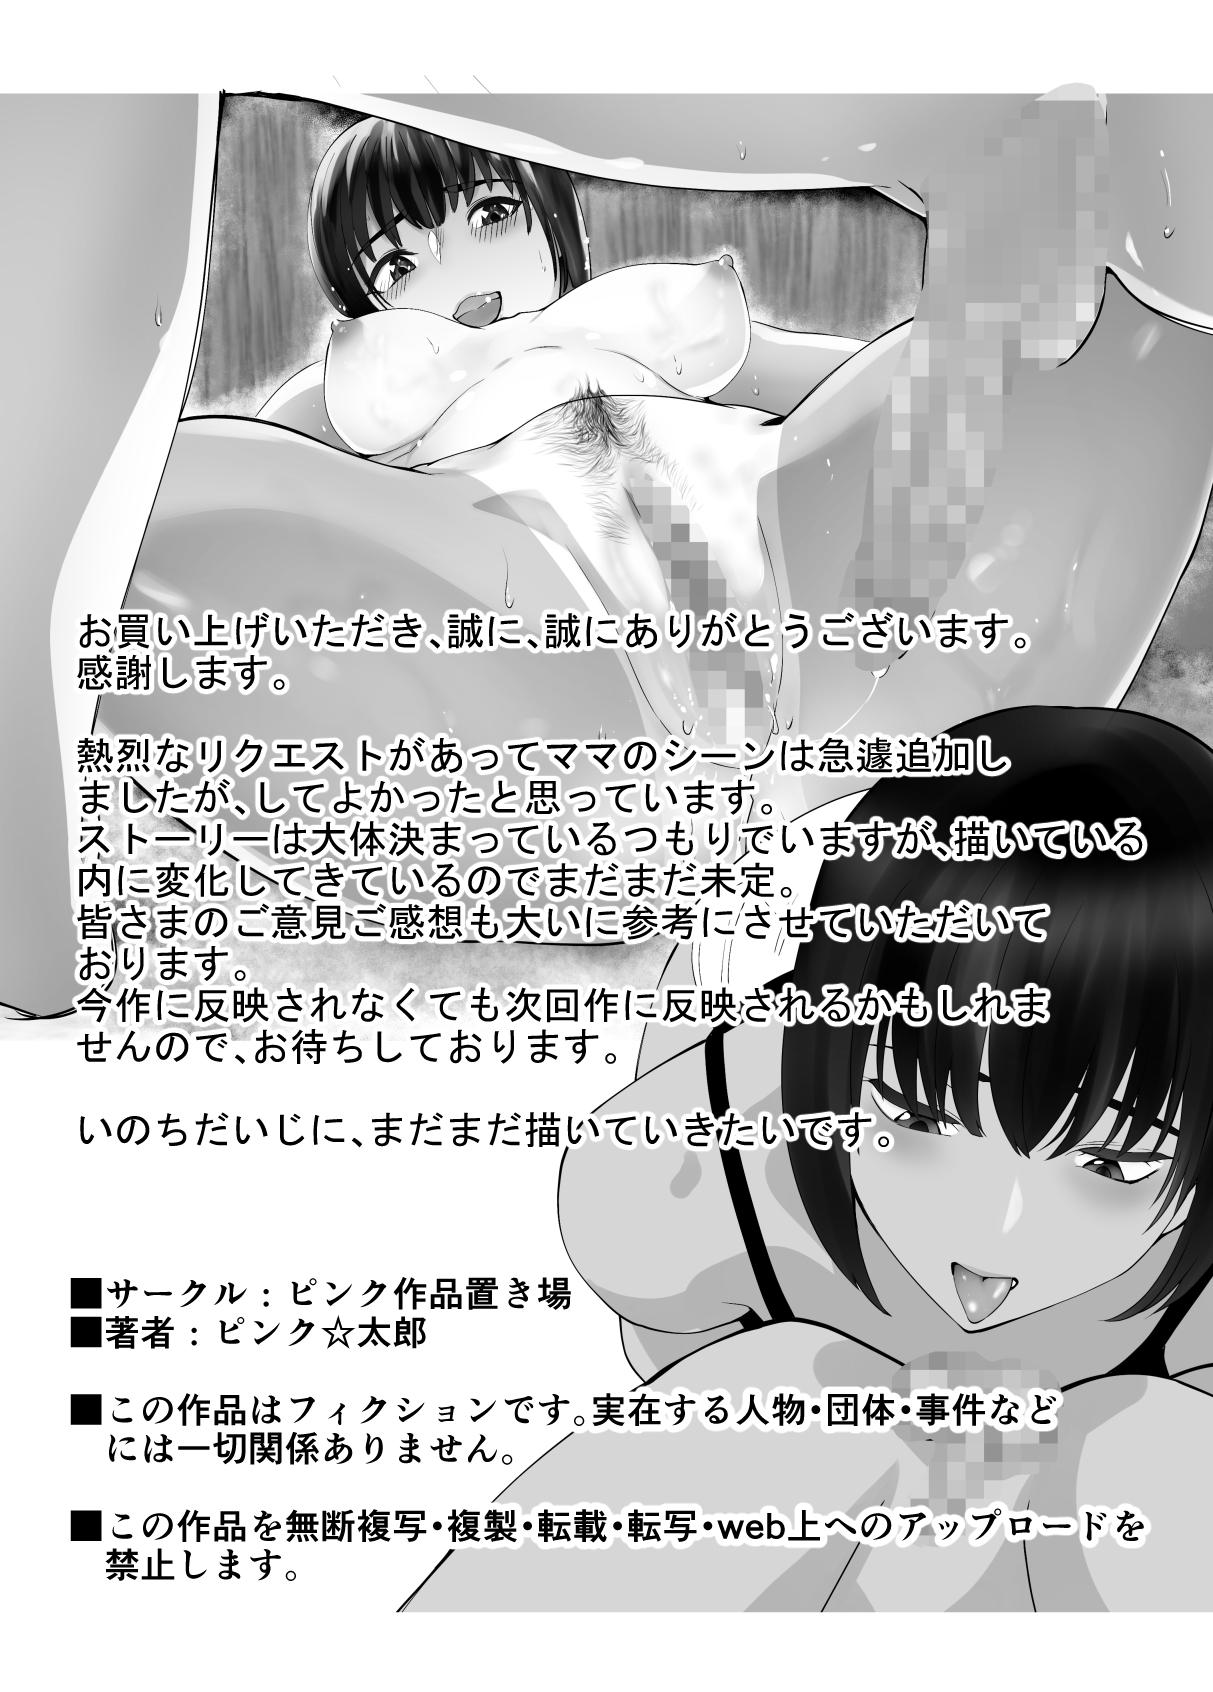 Squirt Osananajimi ga Mama to Yatte Imasu. 6 - Original Bubble - Page 69